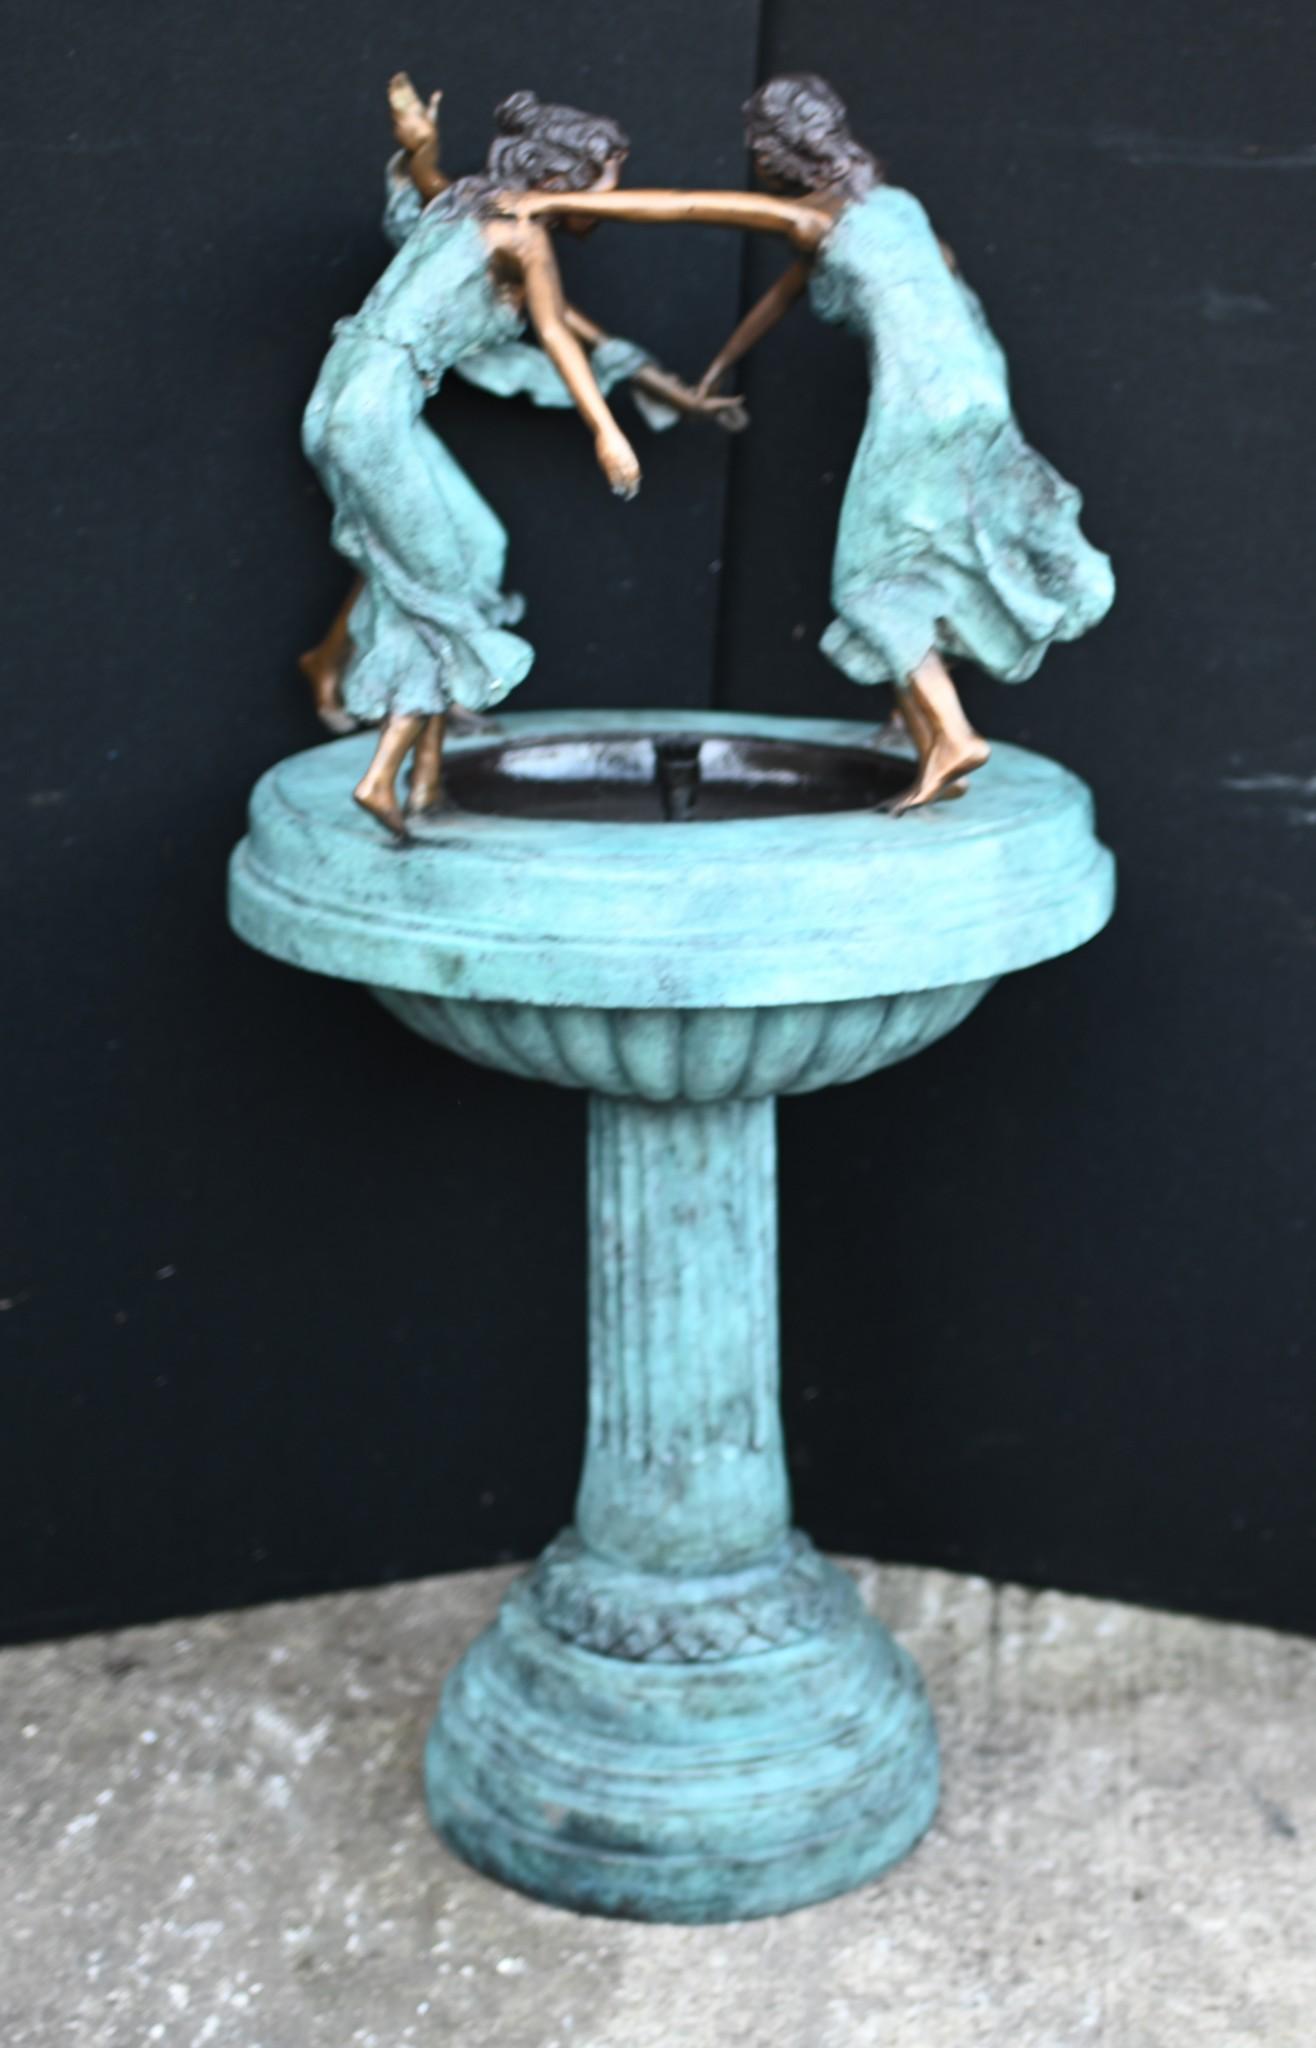 Wunderschöner Gartenbrunnen aus Bronze 
Der Jugendstil-Brunnen zeigt ein Quartett von Feen
Ausgelassen tanzende Jungfrauen sind um den Rand des Brunnens dargestellt
Ein so charmantes Stück, das jeden Garten zum Leben erwecken würde
Großartige Arbeit